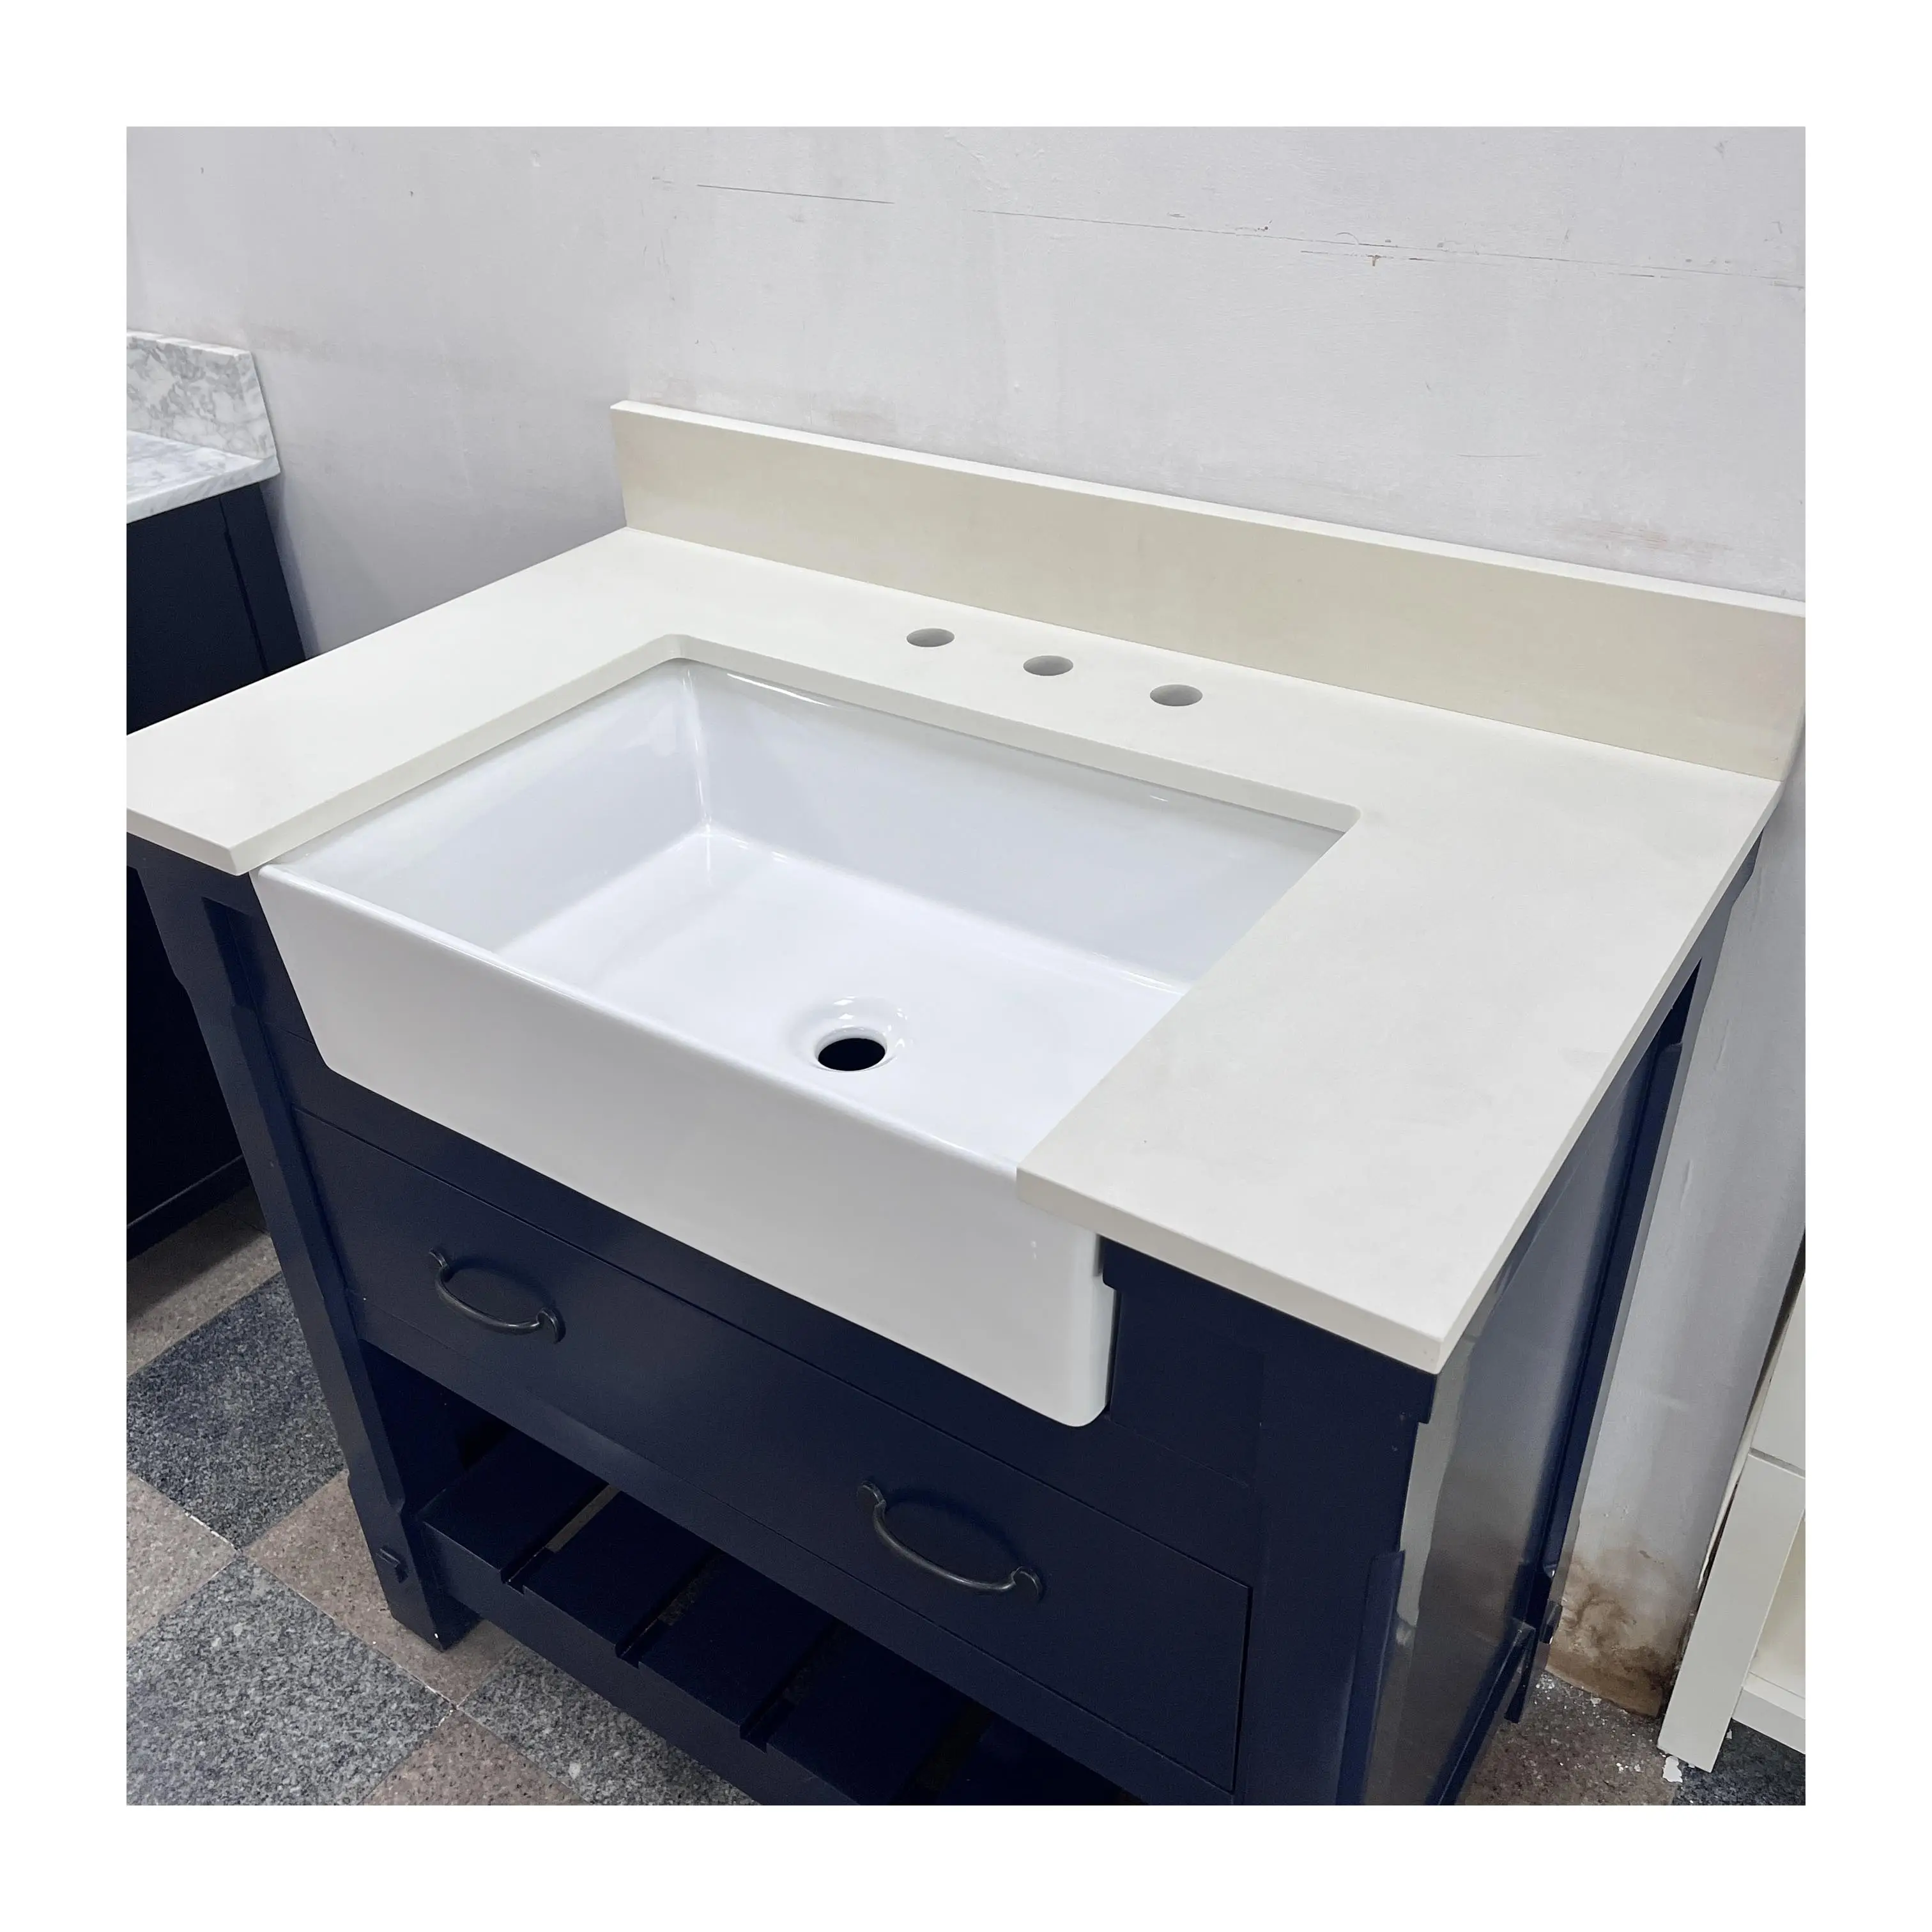 KINGS-WING, бестселлер, полированный, толщиной 20 мм, идеально подходит для современной ванной комнаты с раковиной, спроектированный из чистого белого кварца, модель SMB006